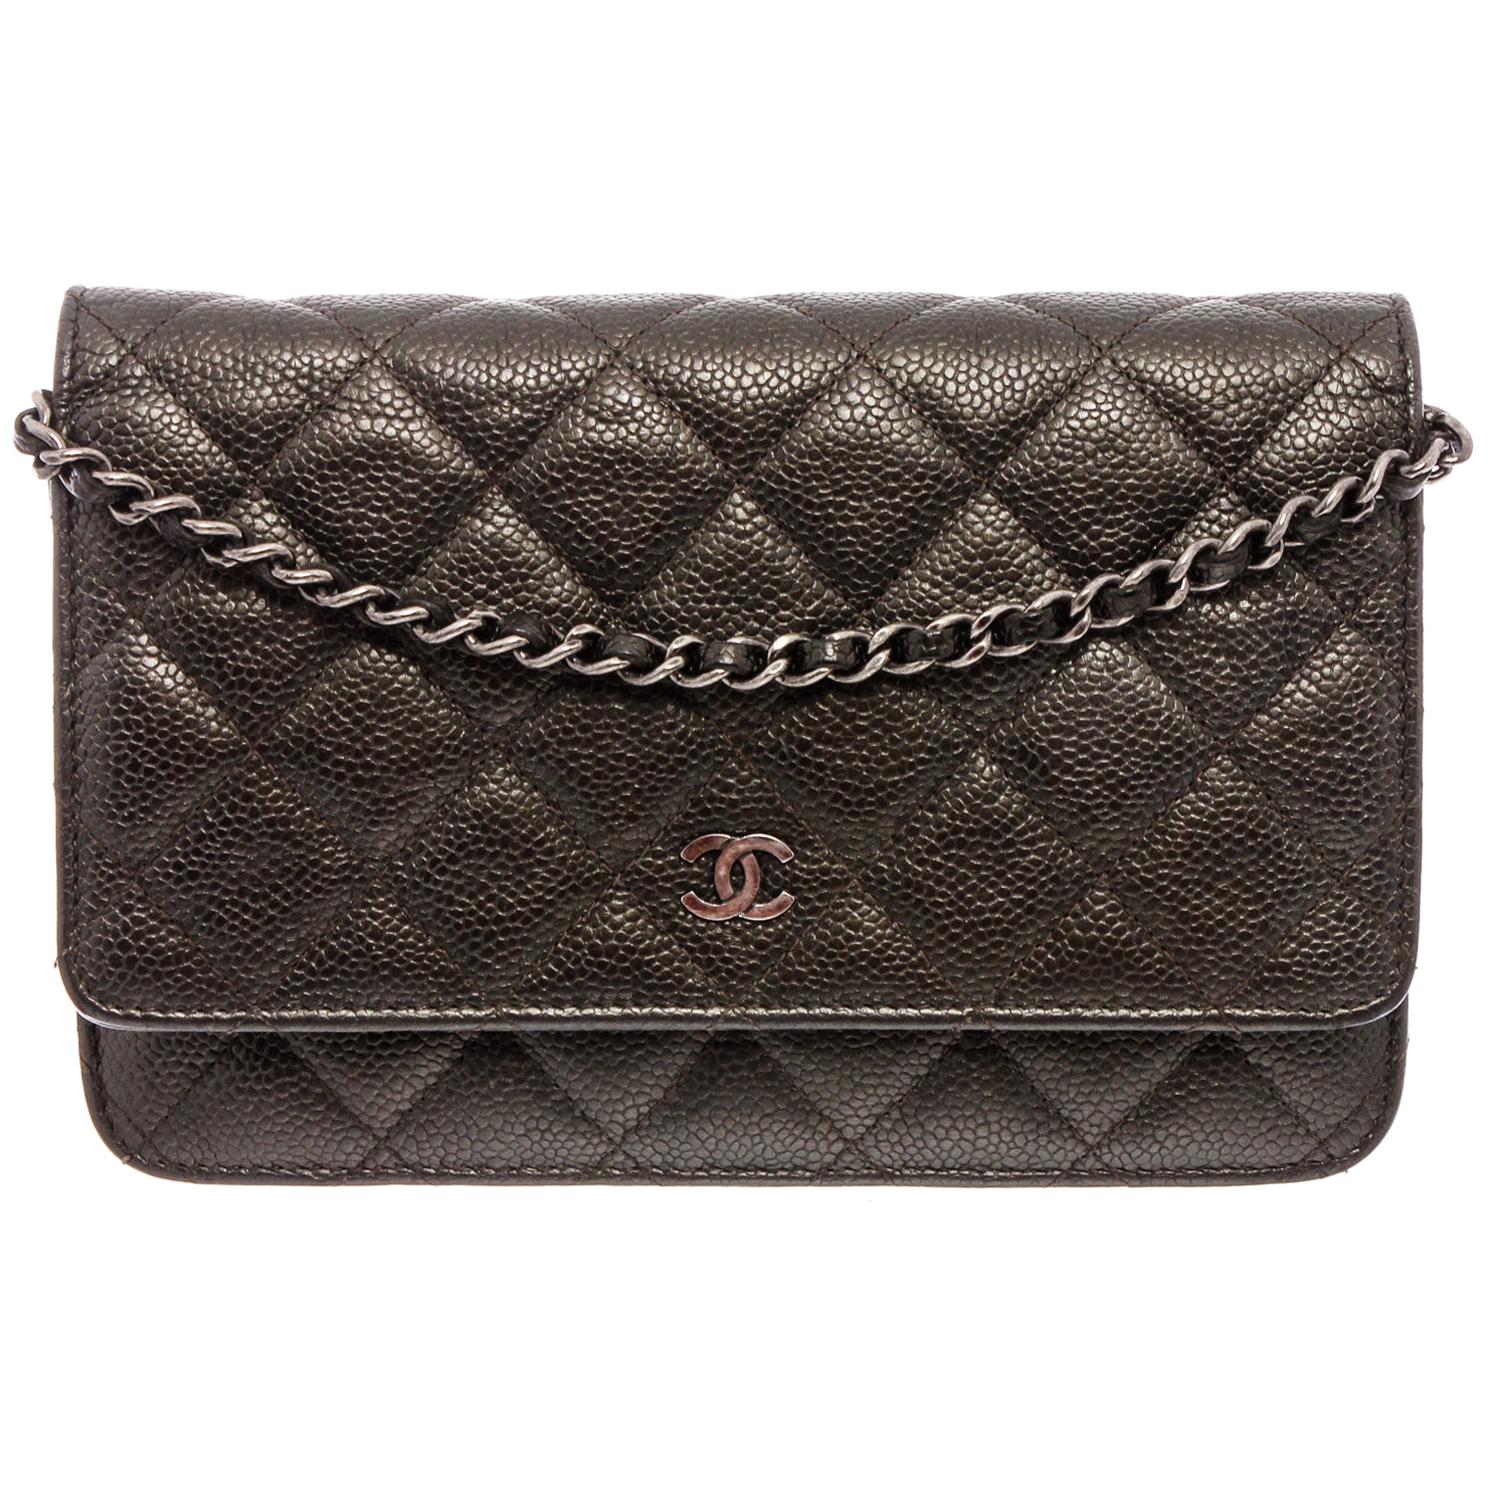 Chanel Dark Grey Caviar Leather WOC Wallet On Chain Bag